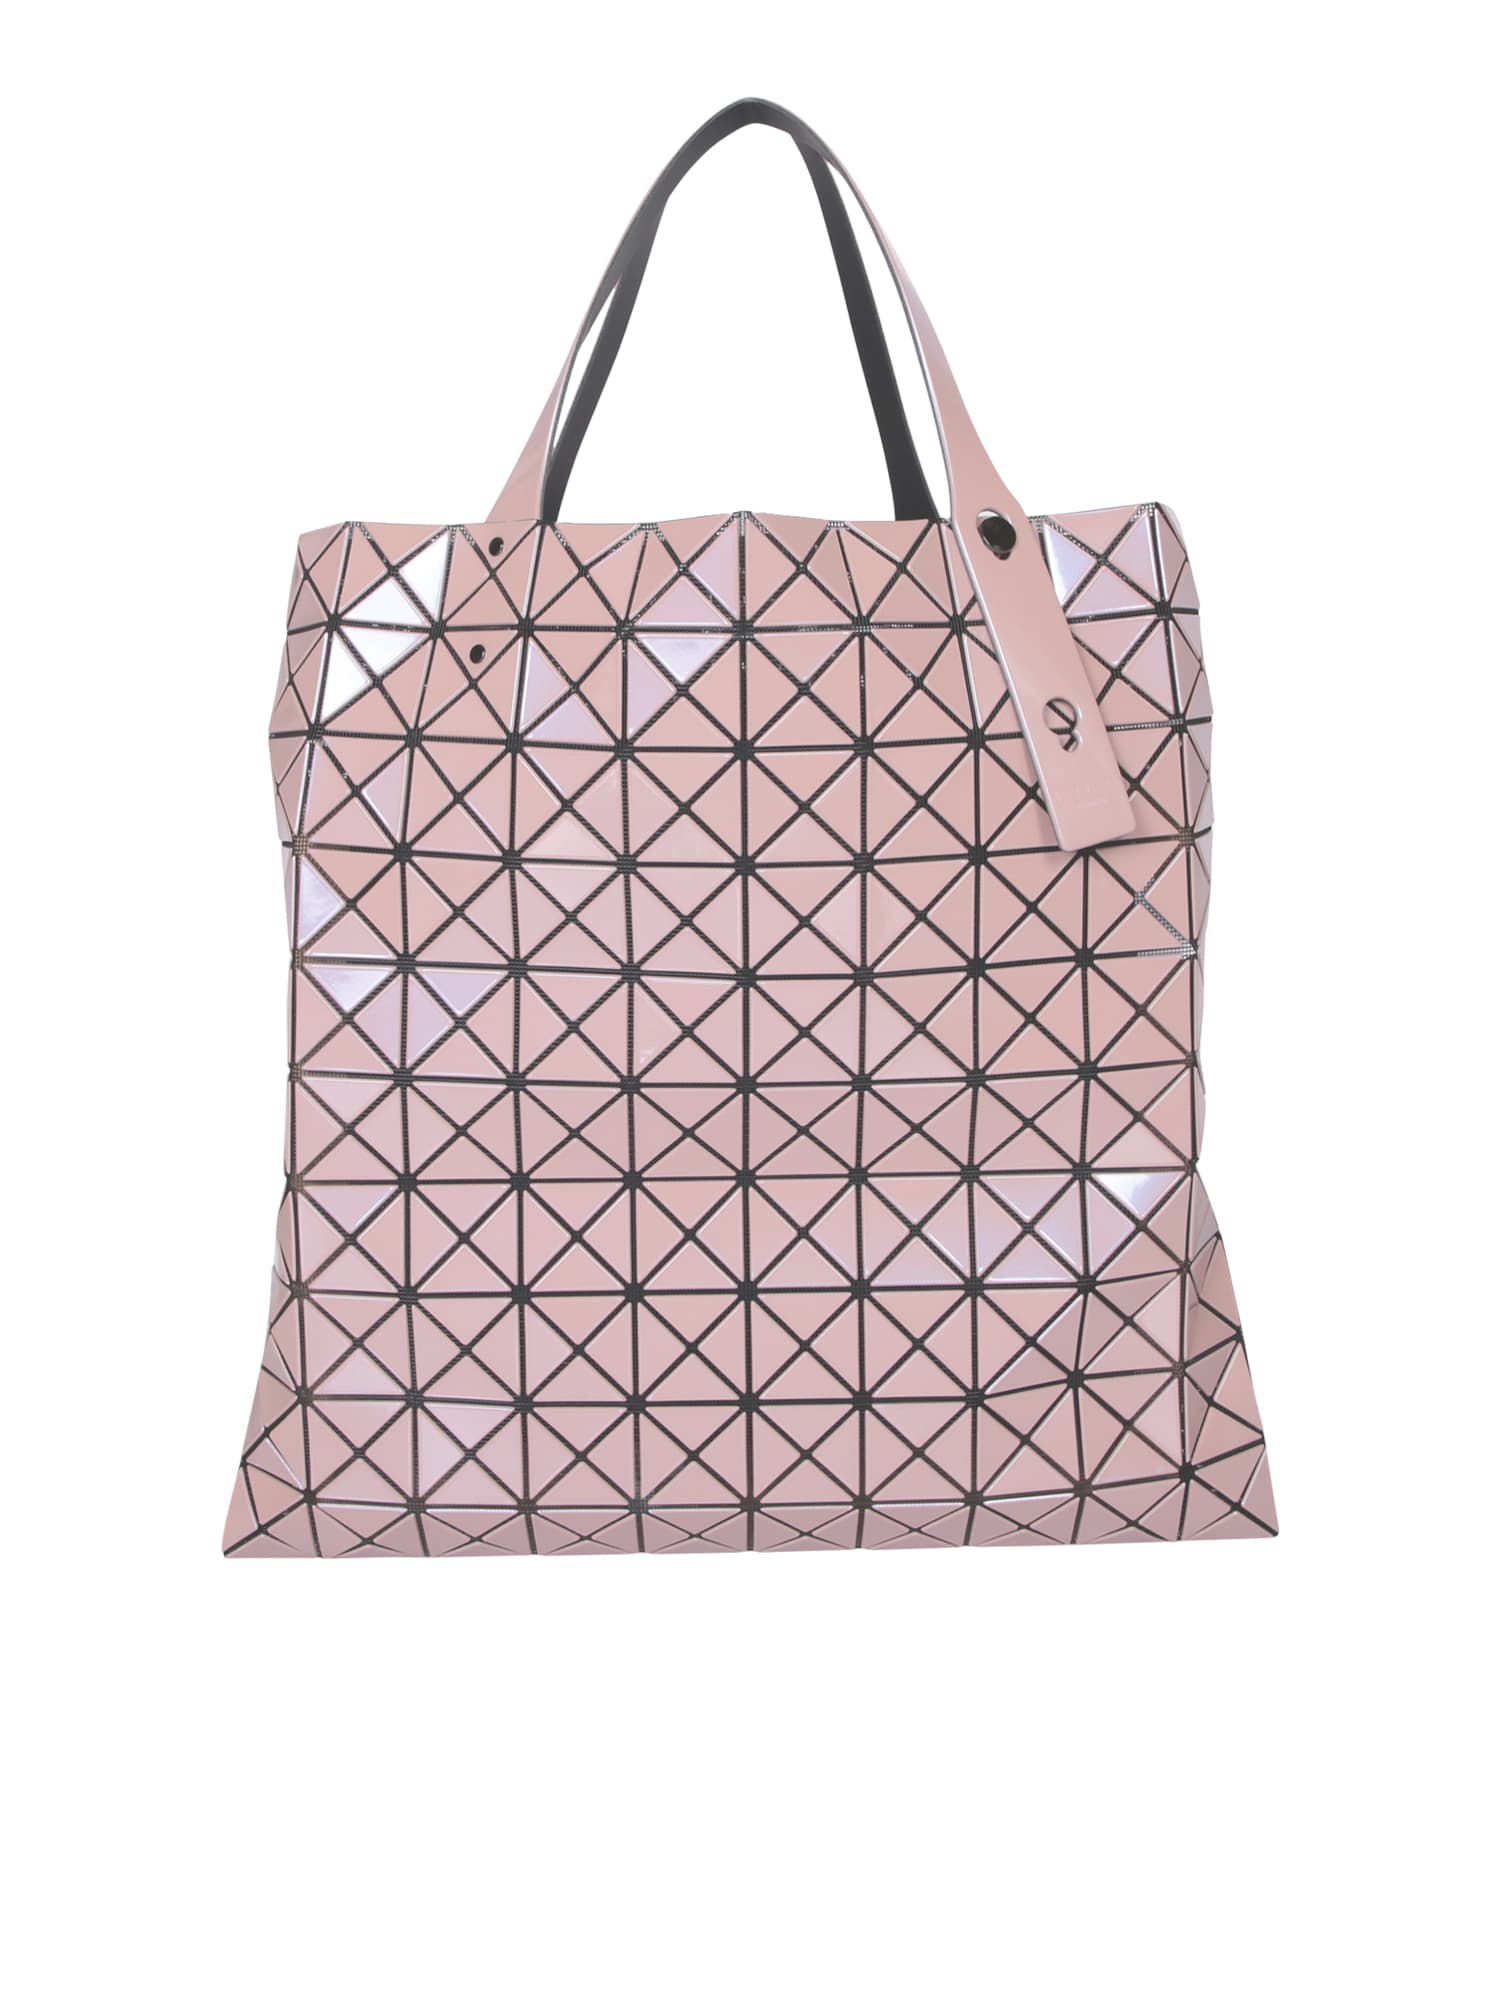 Prism Metallic Pink Large Bag